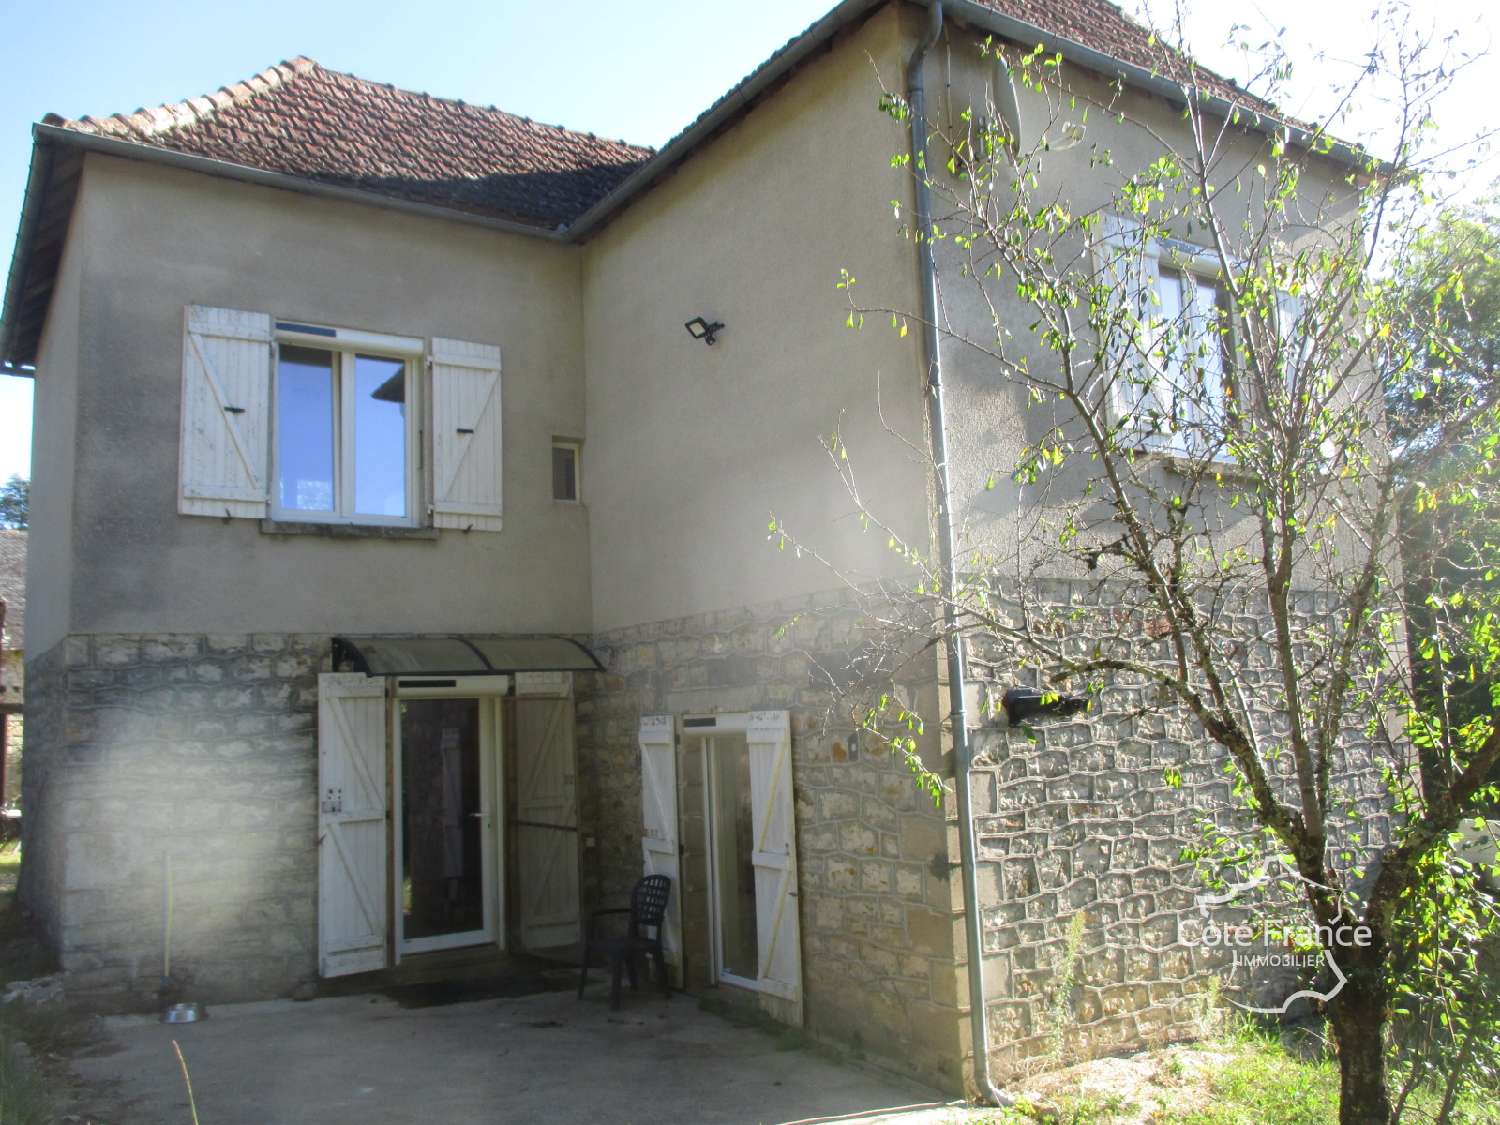  à vendre maison Coly Dordogne 2